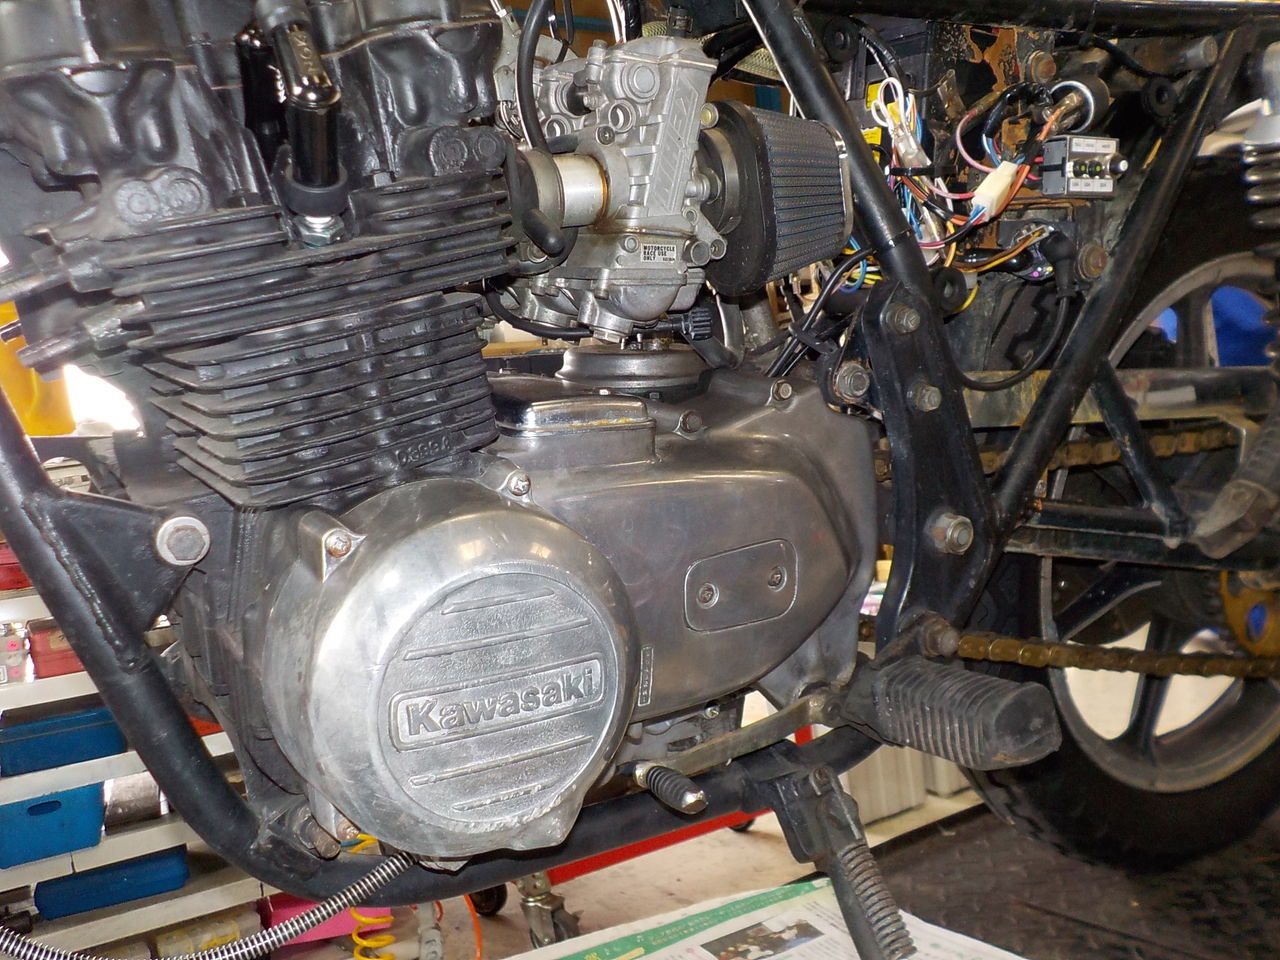 Z400fx オイル漏れ 修理 絶版バイク レストア メンテ